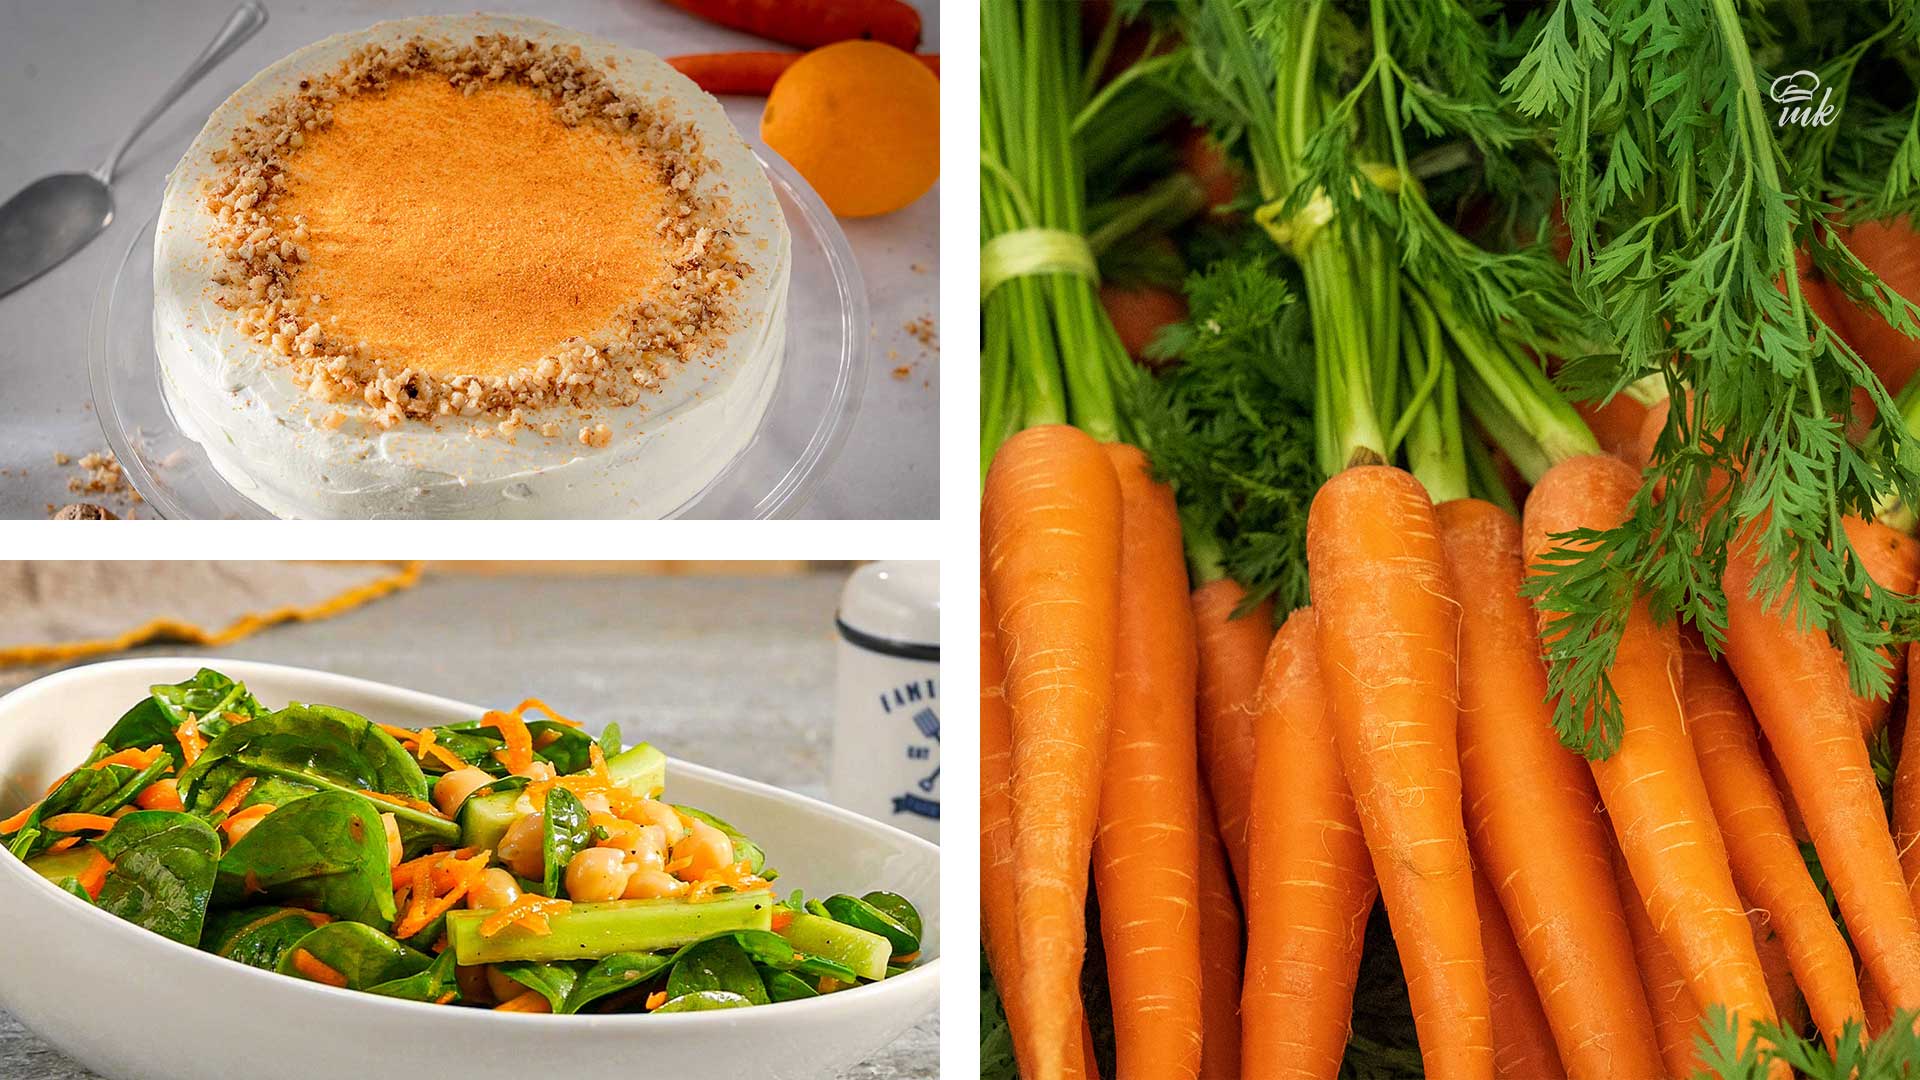 Хрупкавите моркови даряват здраве